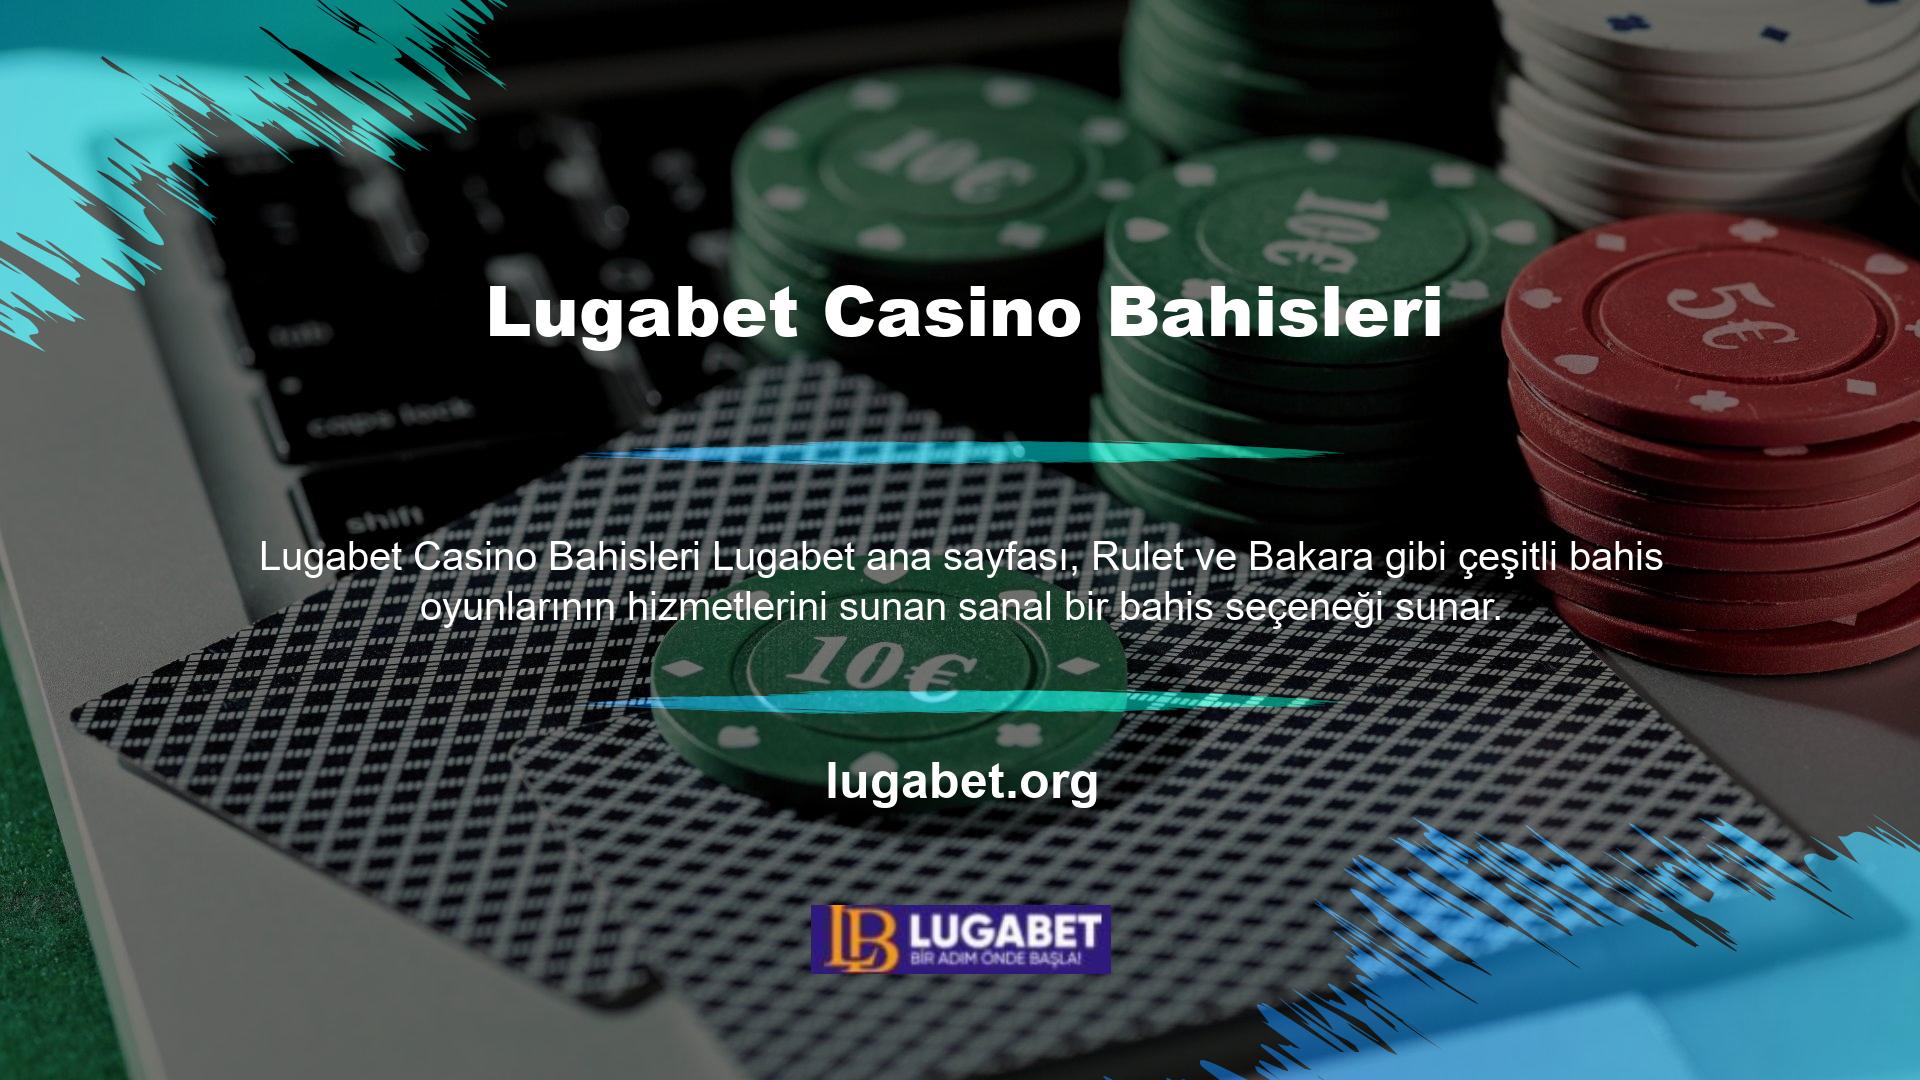 Cep telefonlarında ve tabletlerde slot, jackpot oyunları ve casino tekli bahis içerikleri oynanabilmektedir